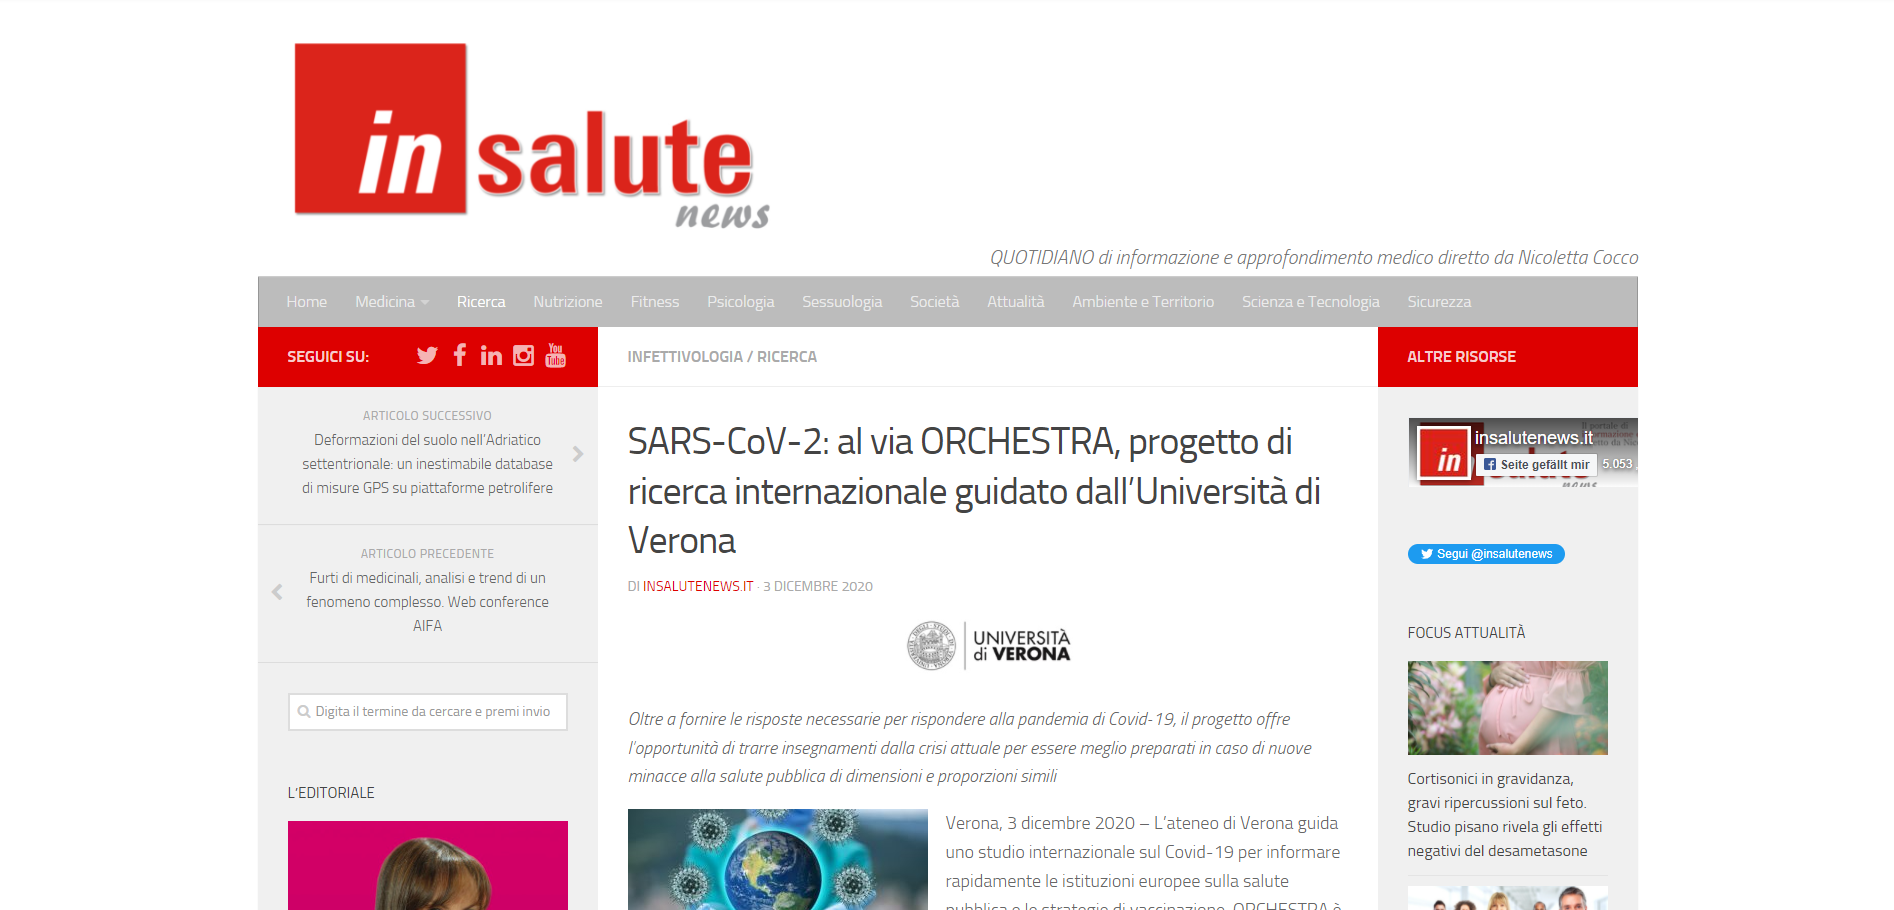 SARS-CoV-2: al via ORCHESTRA, progetto di ricerca internazionale guidato dall’Università di Verona